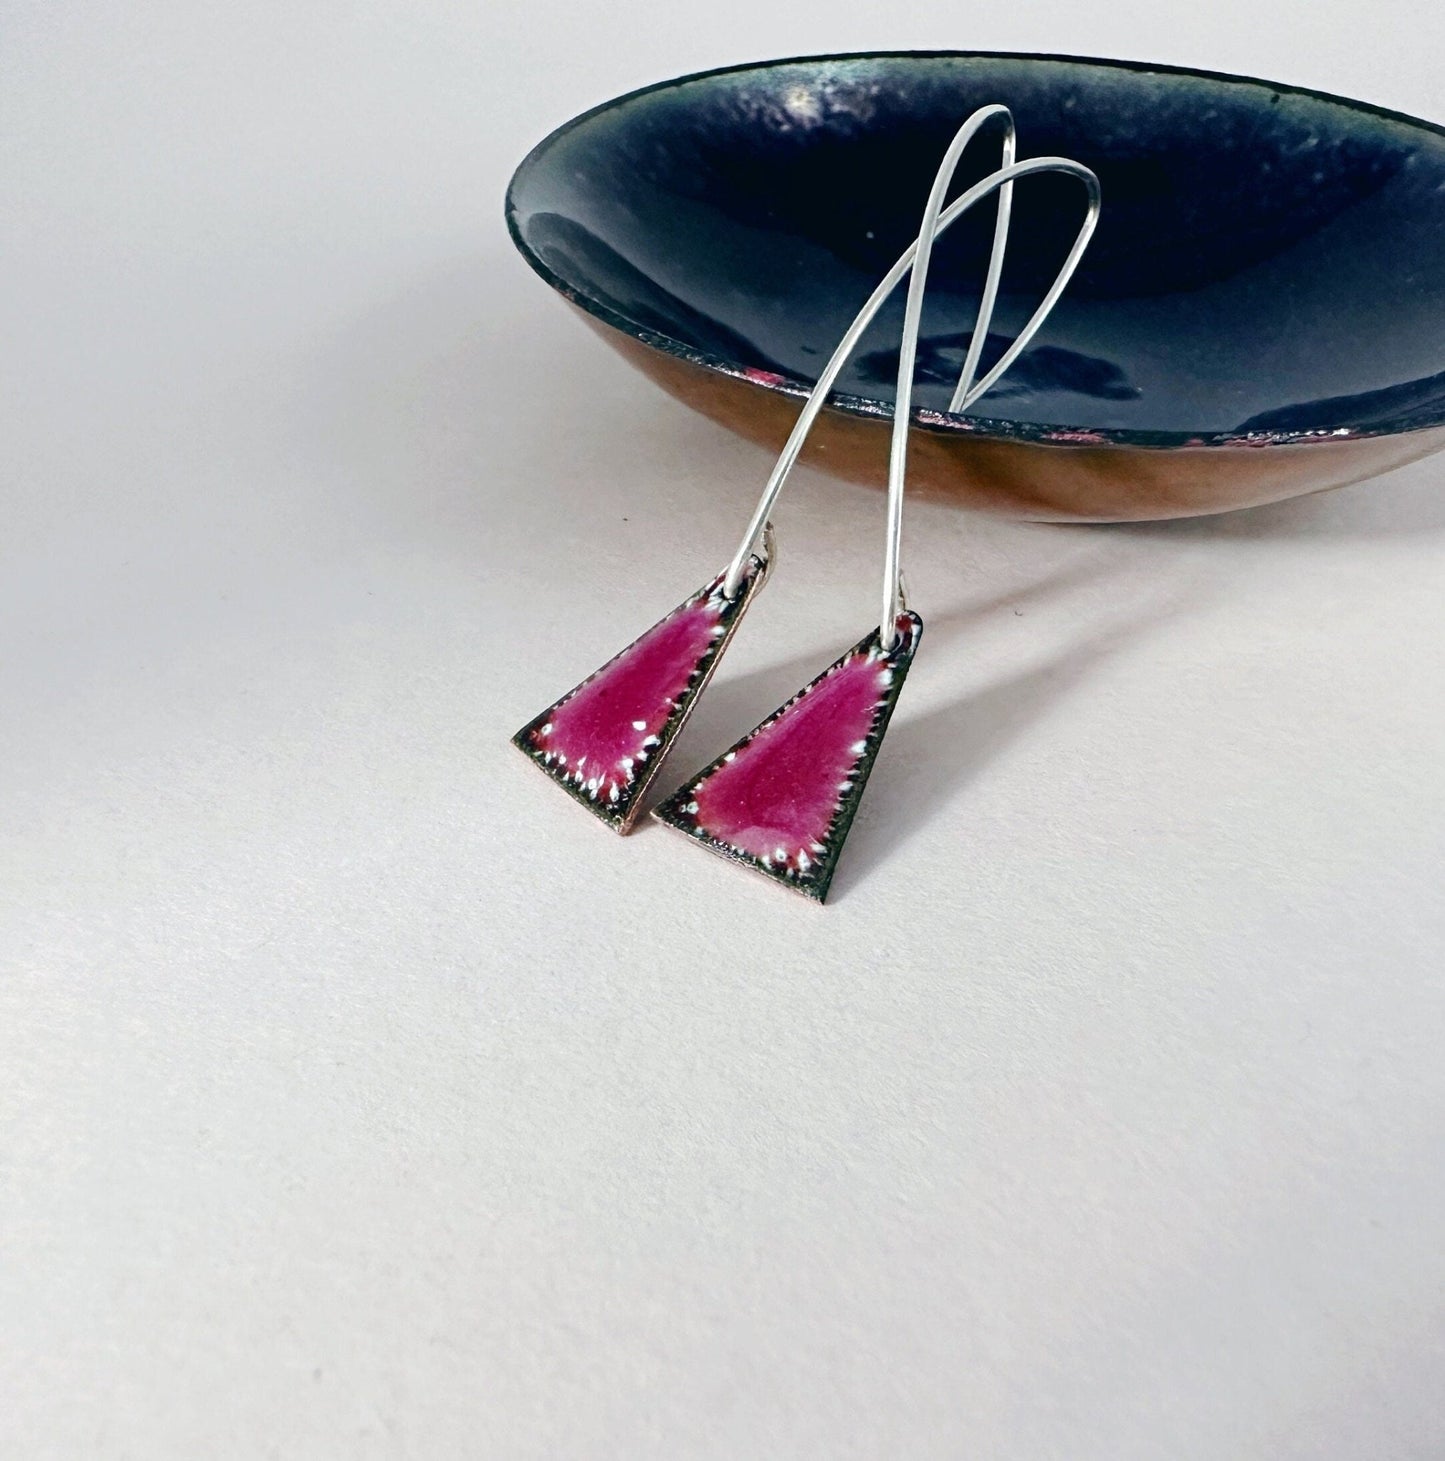 Raspberry Pink Enamel Triangle Shaped Earrings, Geometric Drop Earrings with Silver Ear Wires - MaisyPlum